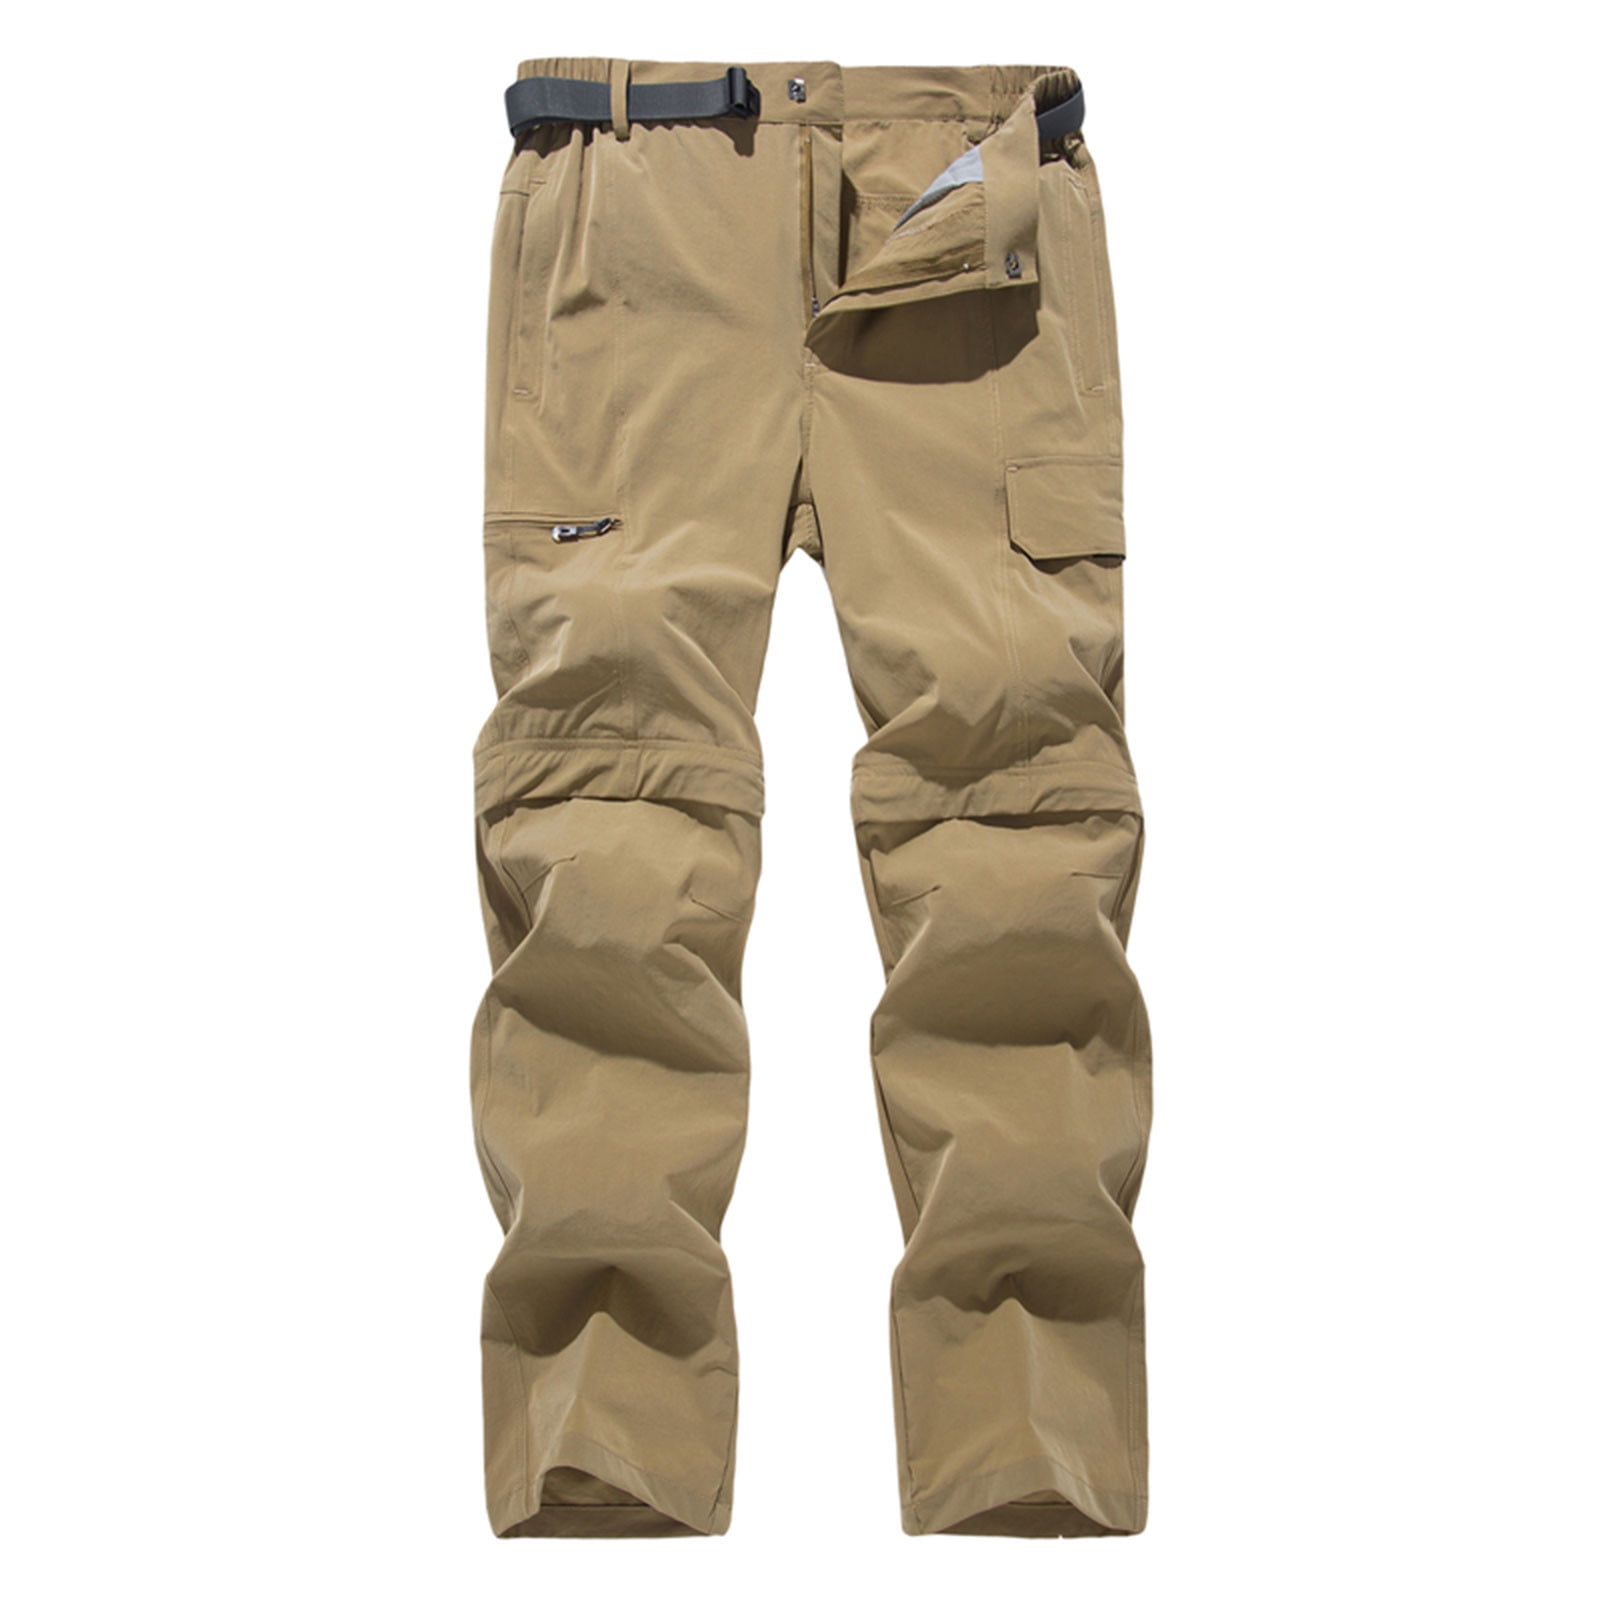 Navitas Explorer Zip Off Combat Trousers Quick Dry Anti-bacteria Carp  Fishing | eBay